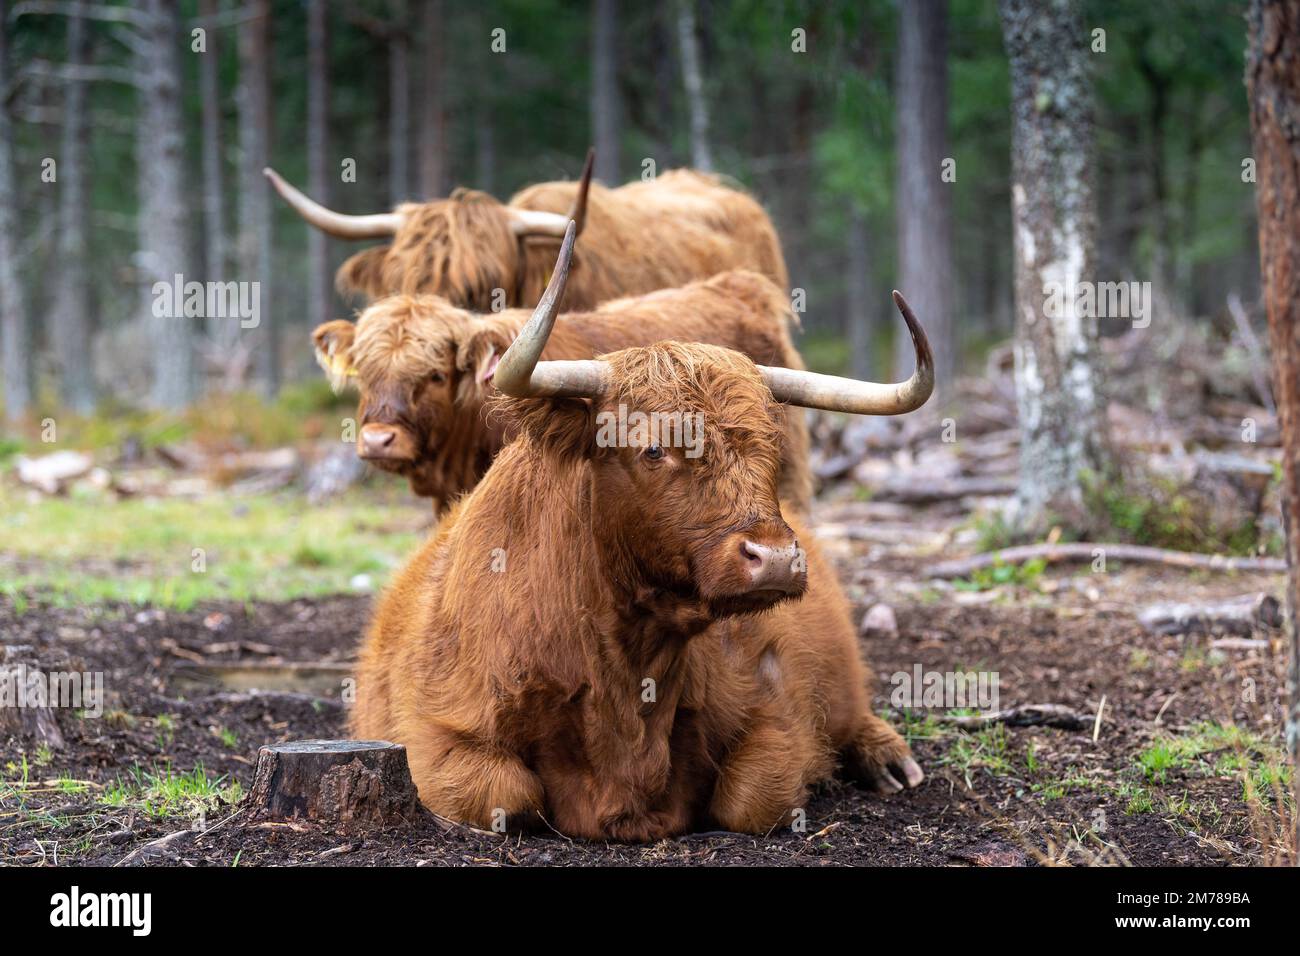 Les bovins des Highlands dans les forêts de pins où ils broutent parmi les arbres pour aider à améliorer l'habitat des bois. Highlands, Écosse, Royaume-Uni. Banque D'Images